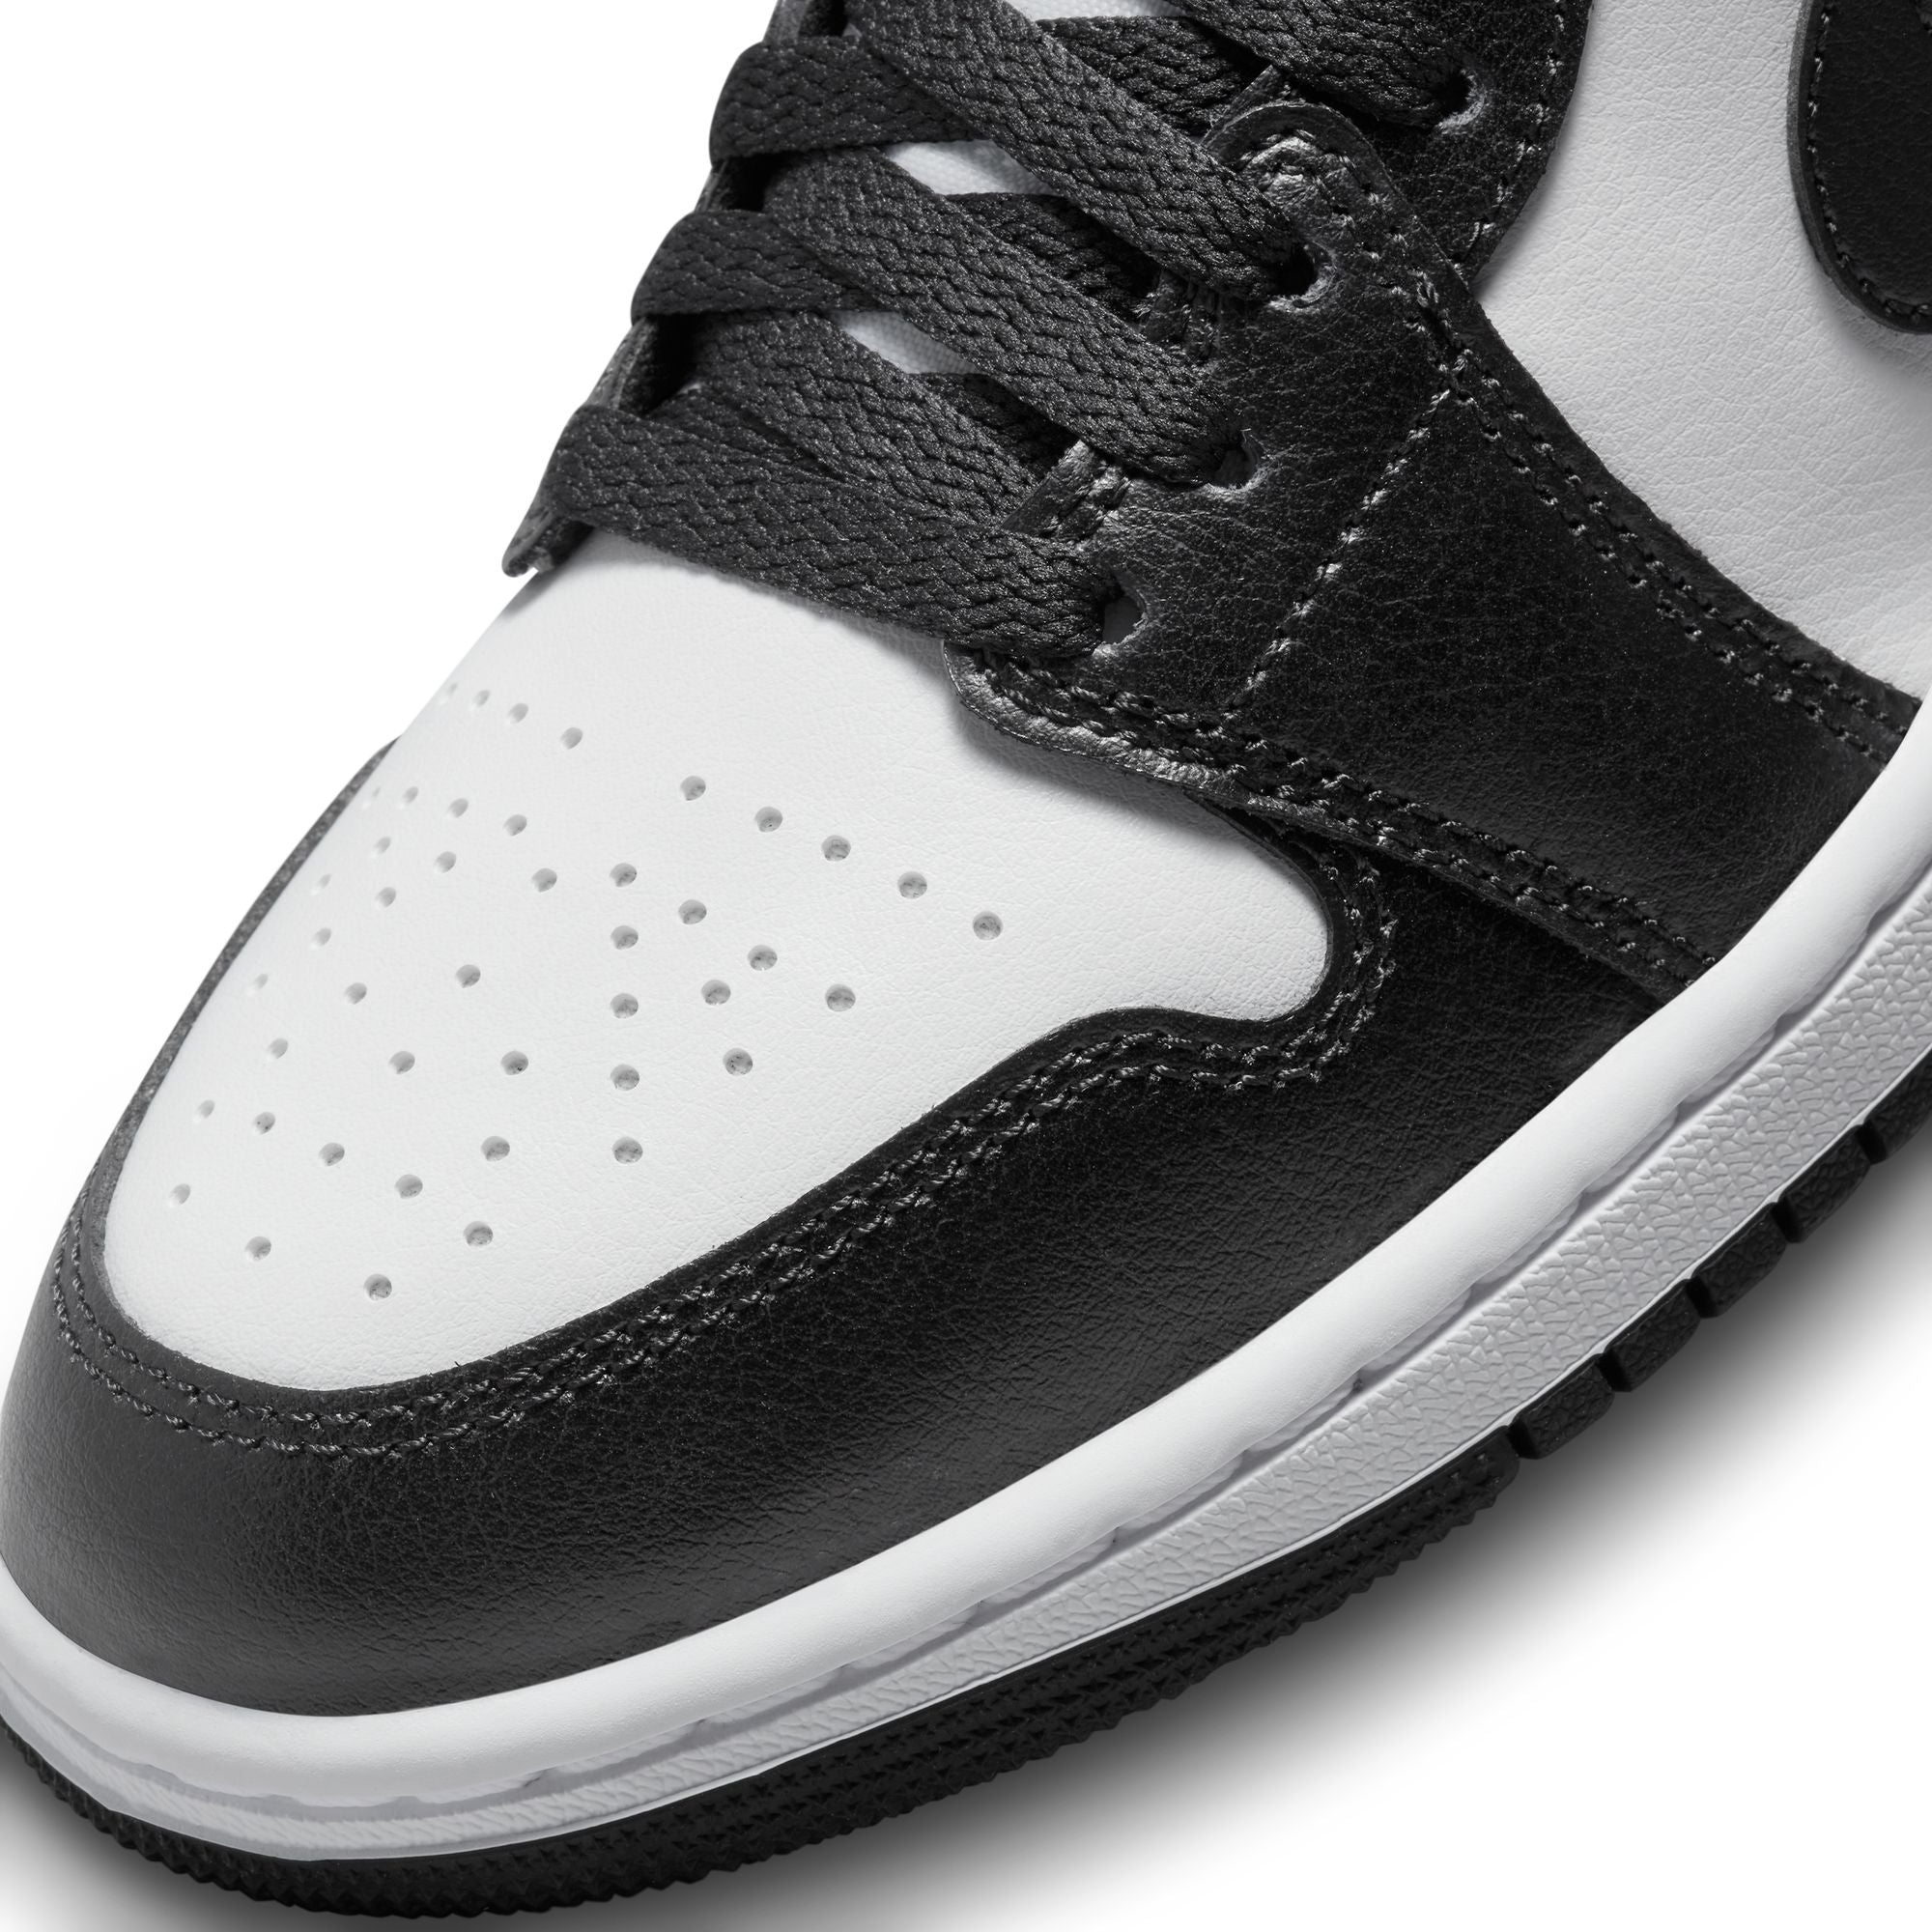 WMNS Nike Air Jordan 1 MID Panda